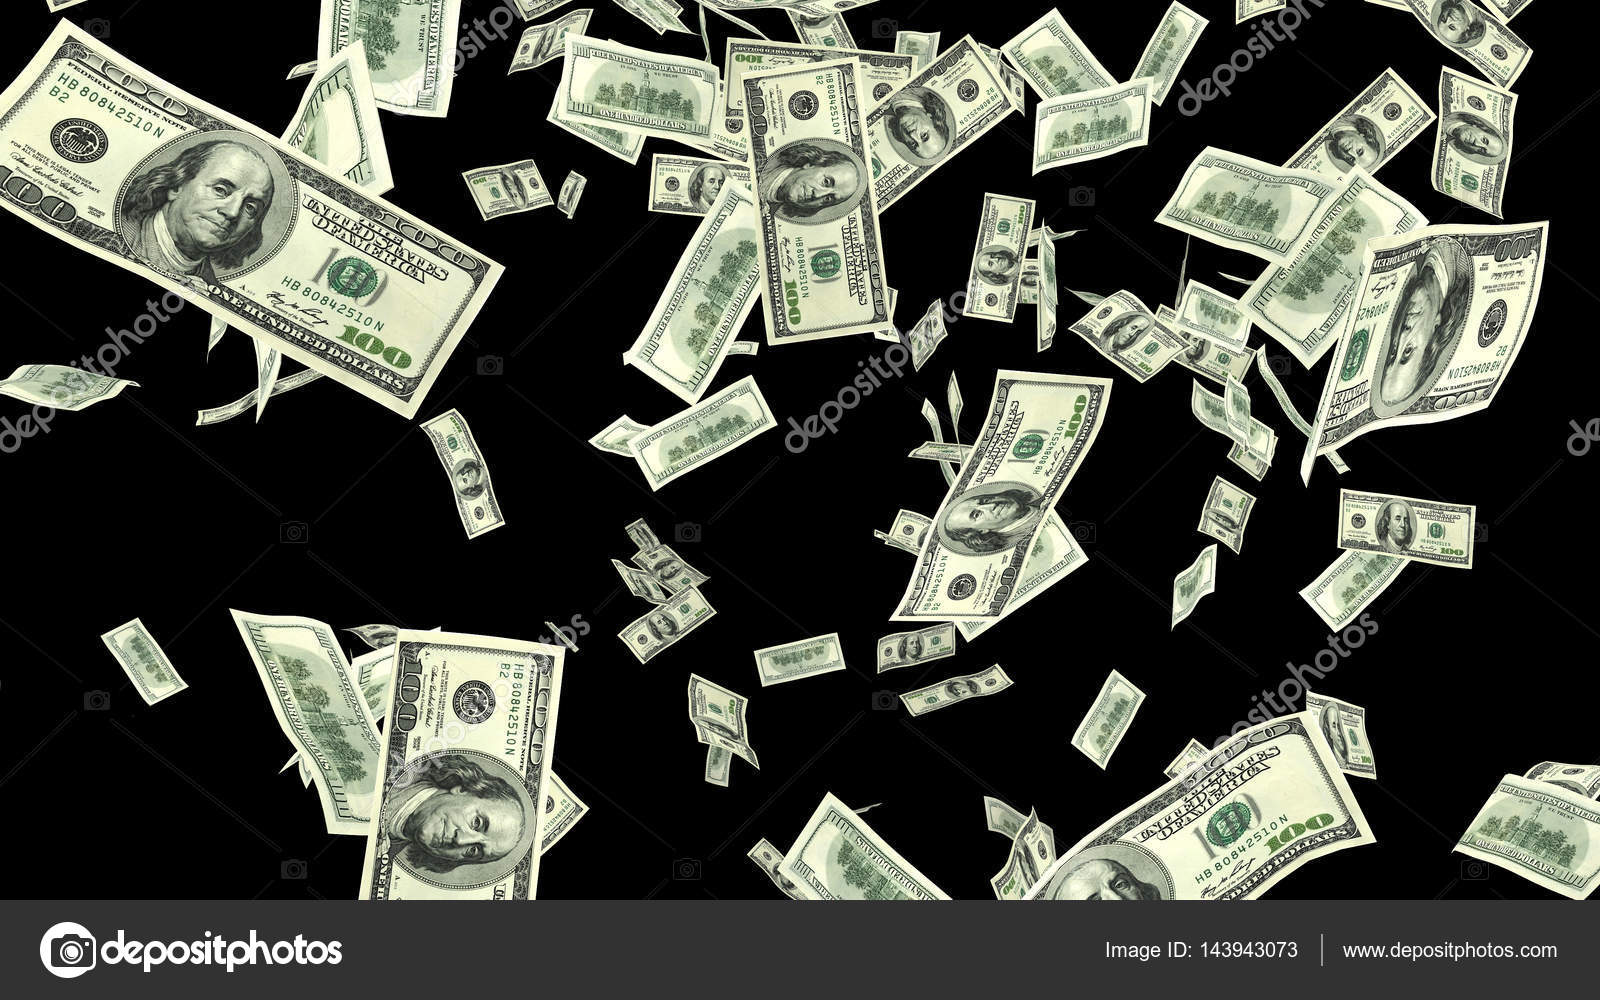 Raining Hundred dollar bills in black background. Stock Photo by  ©RuslanLarin 143943073